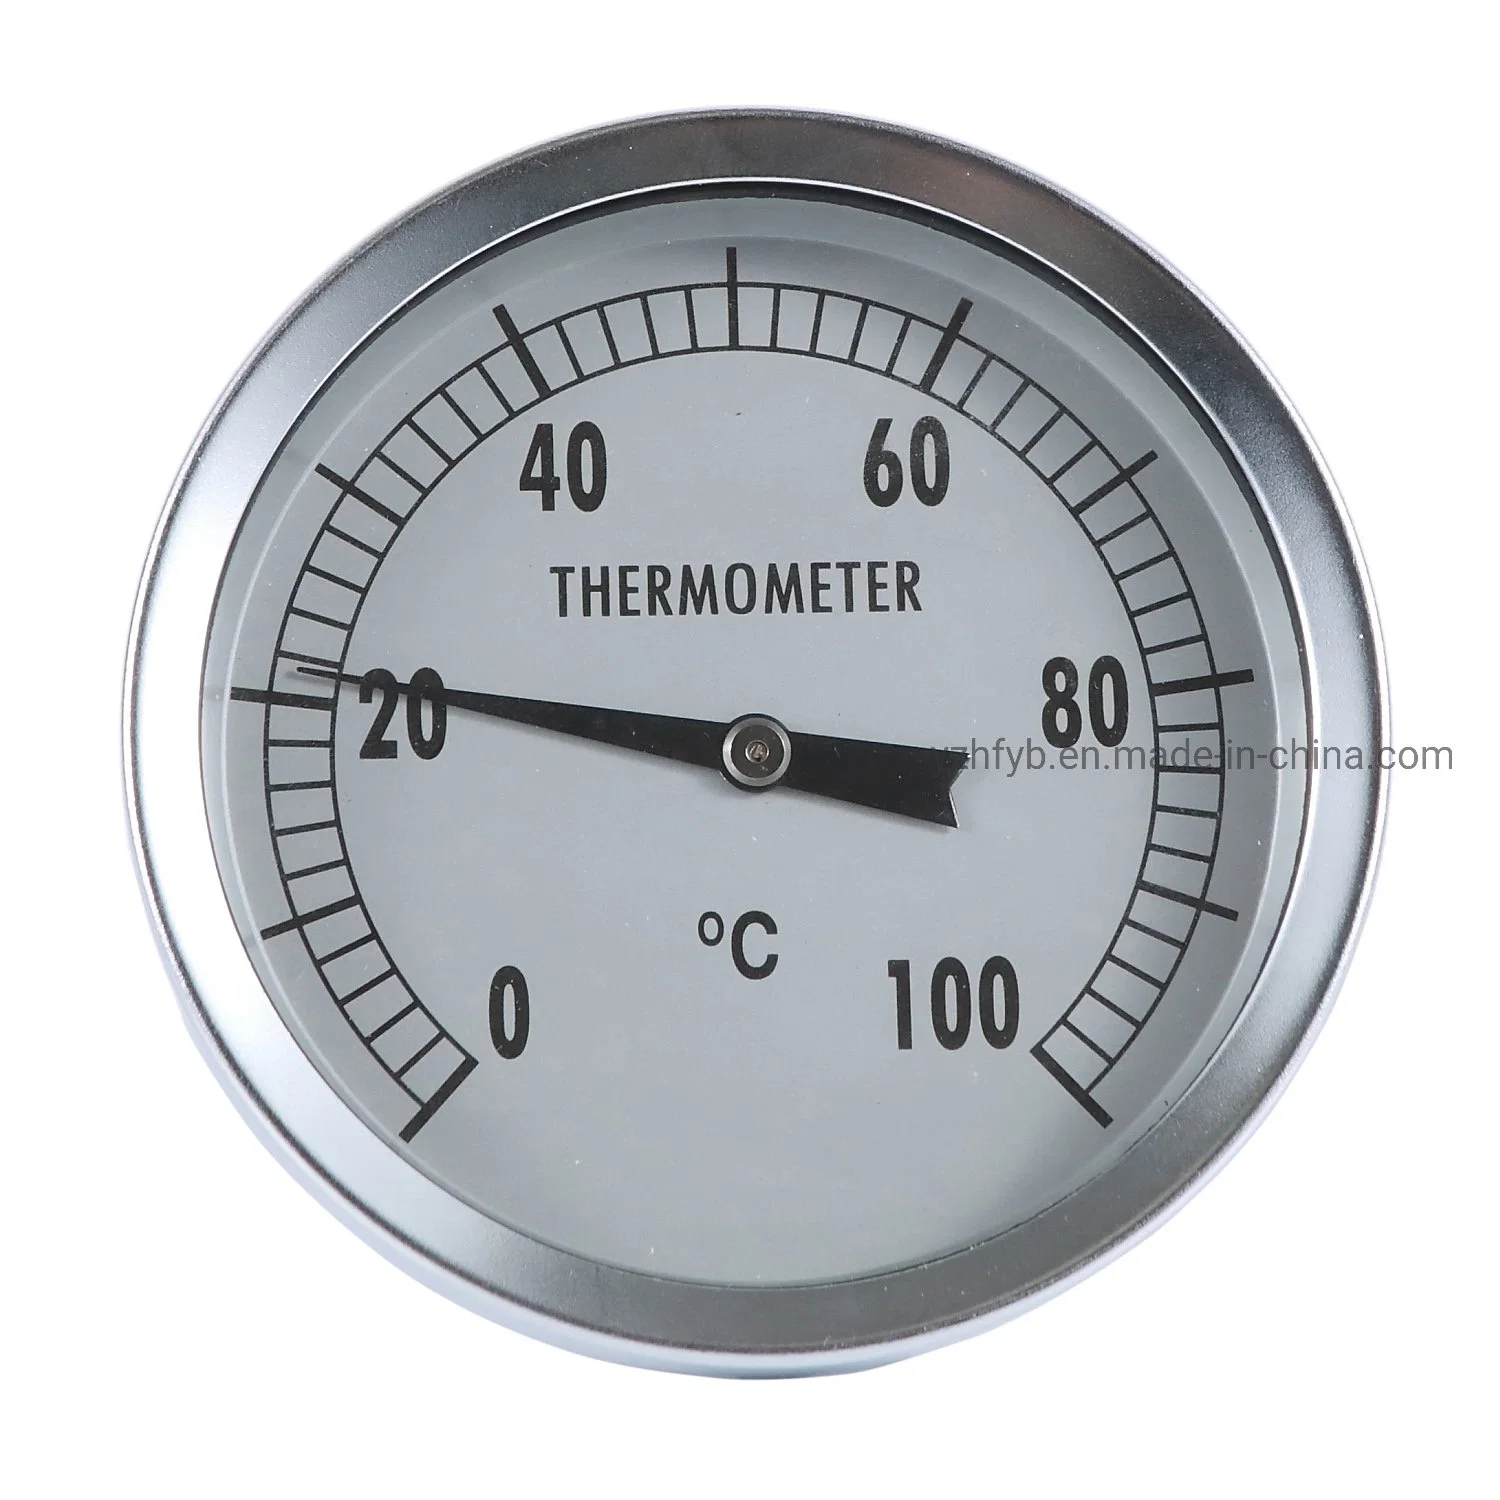 مقياس ضغط مقياس الحرارة سريع الانتركولال بالجملة بحجم 2 بوصة 50 مم في المصنع